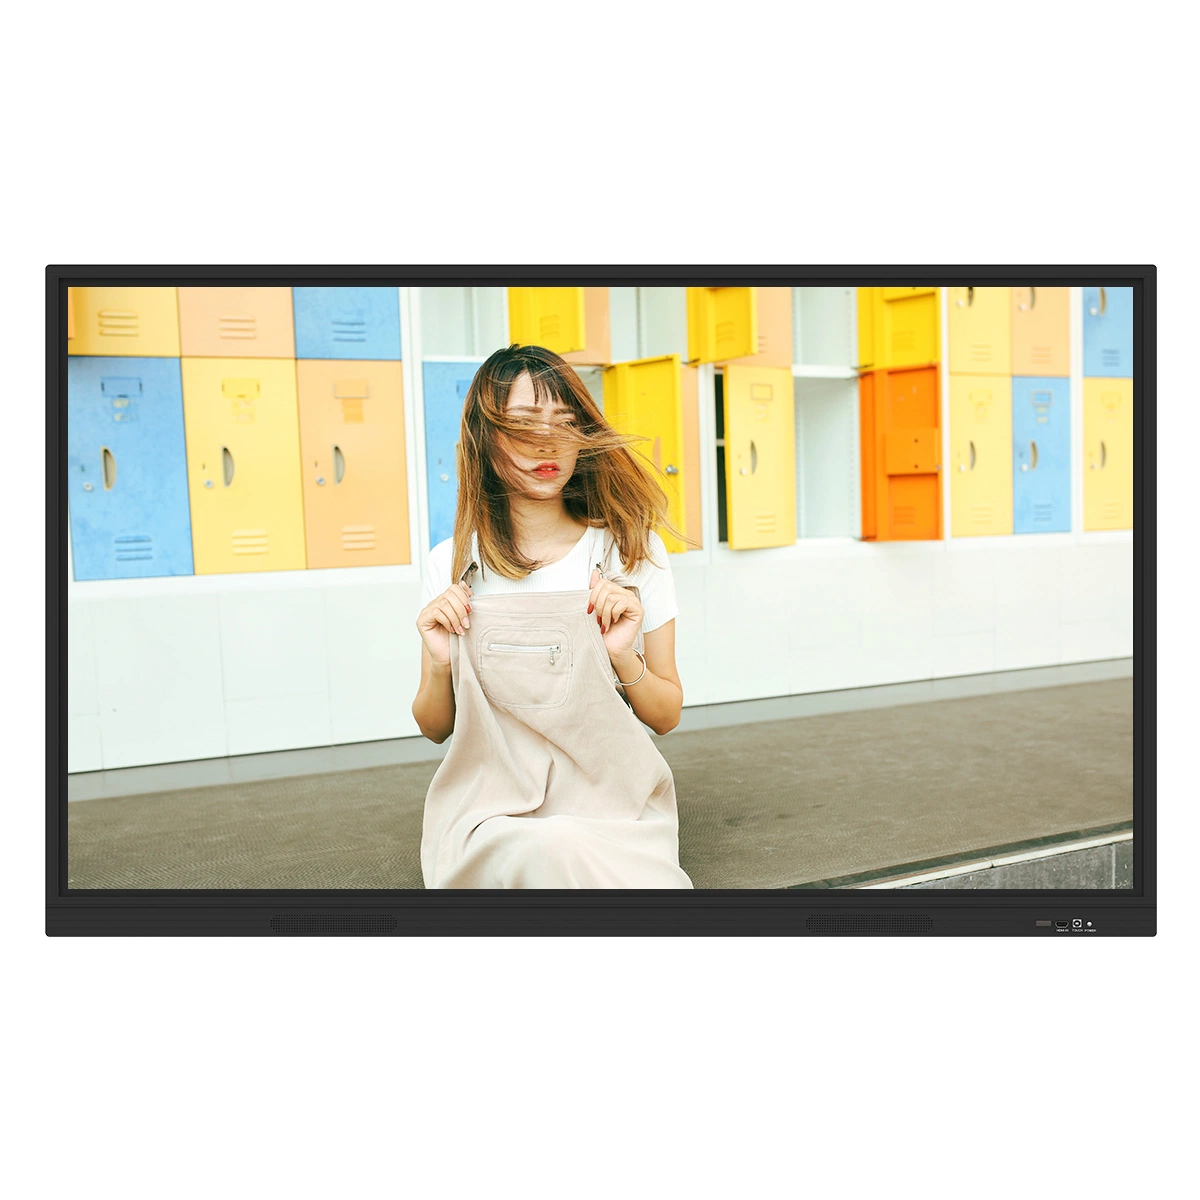 2020 guter Preis hohe Qualität Interaktive Touchscreen-TV LCD LED 4K UHD Smart TV mit elektronischer Schreibplatte für Konferenzschaltung Für Business Education